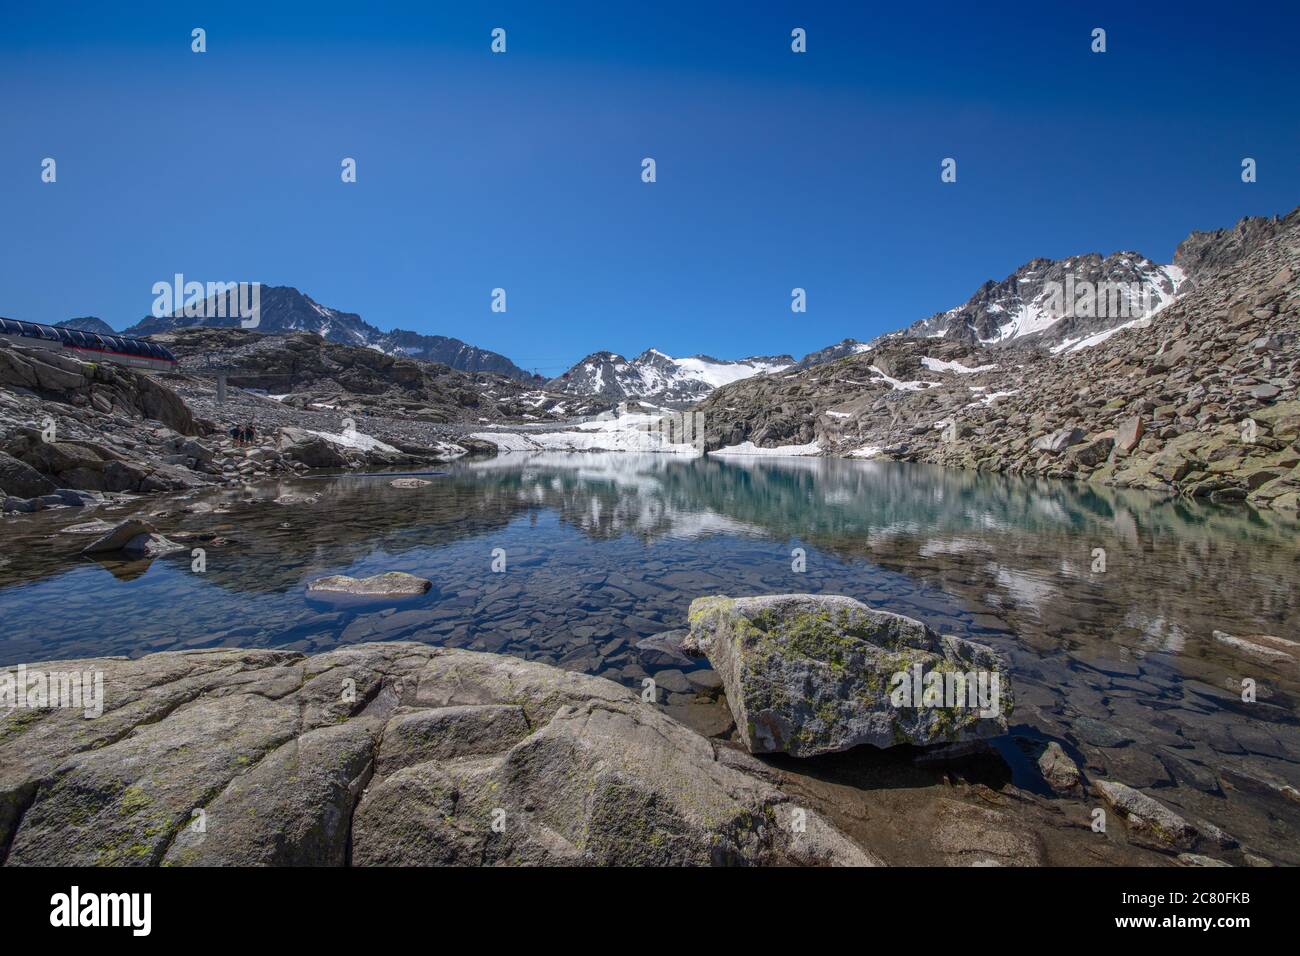 a beautiful wide angle picture of a small lake at the 'Ghiacciao della Presena', the Presena Glacier, Trentino, Italy Stock Photo